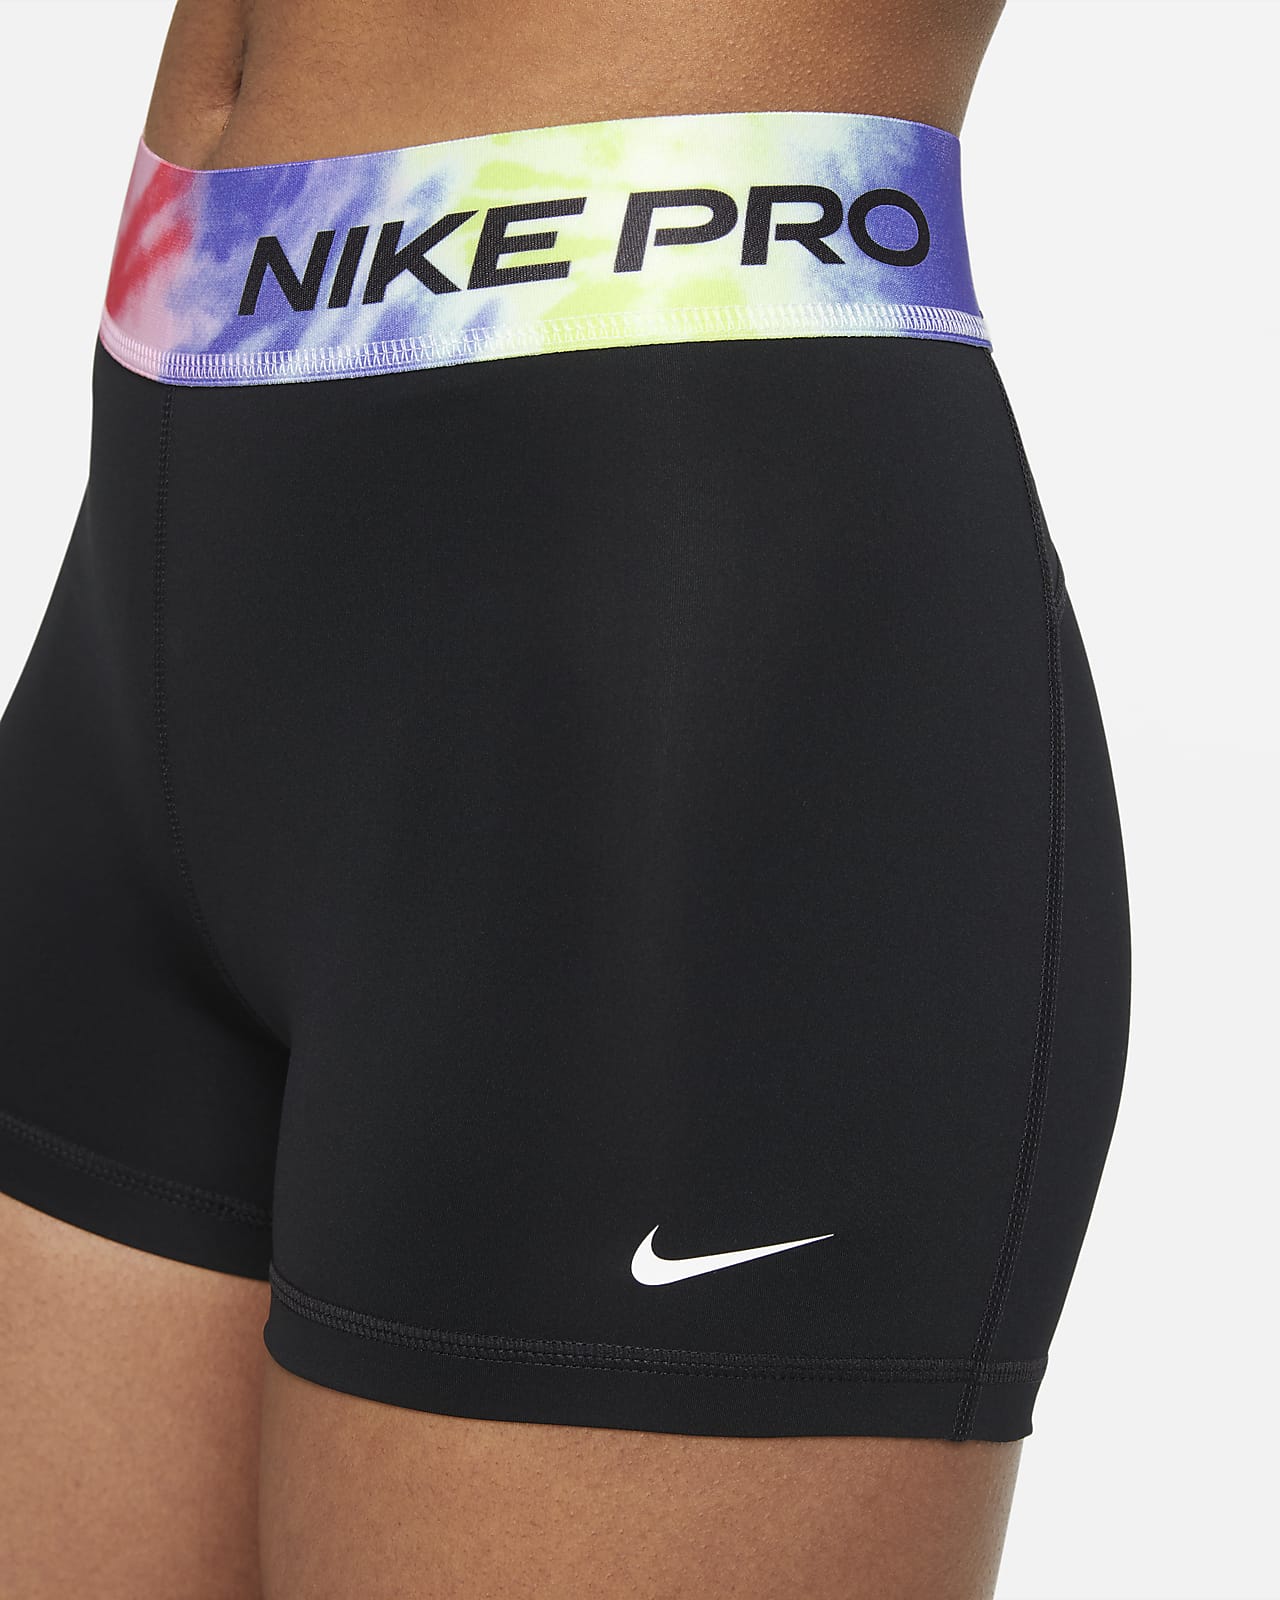 nike pro shorts size medium